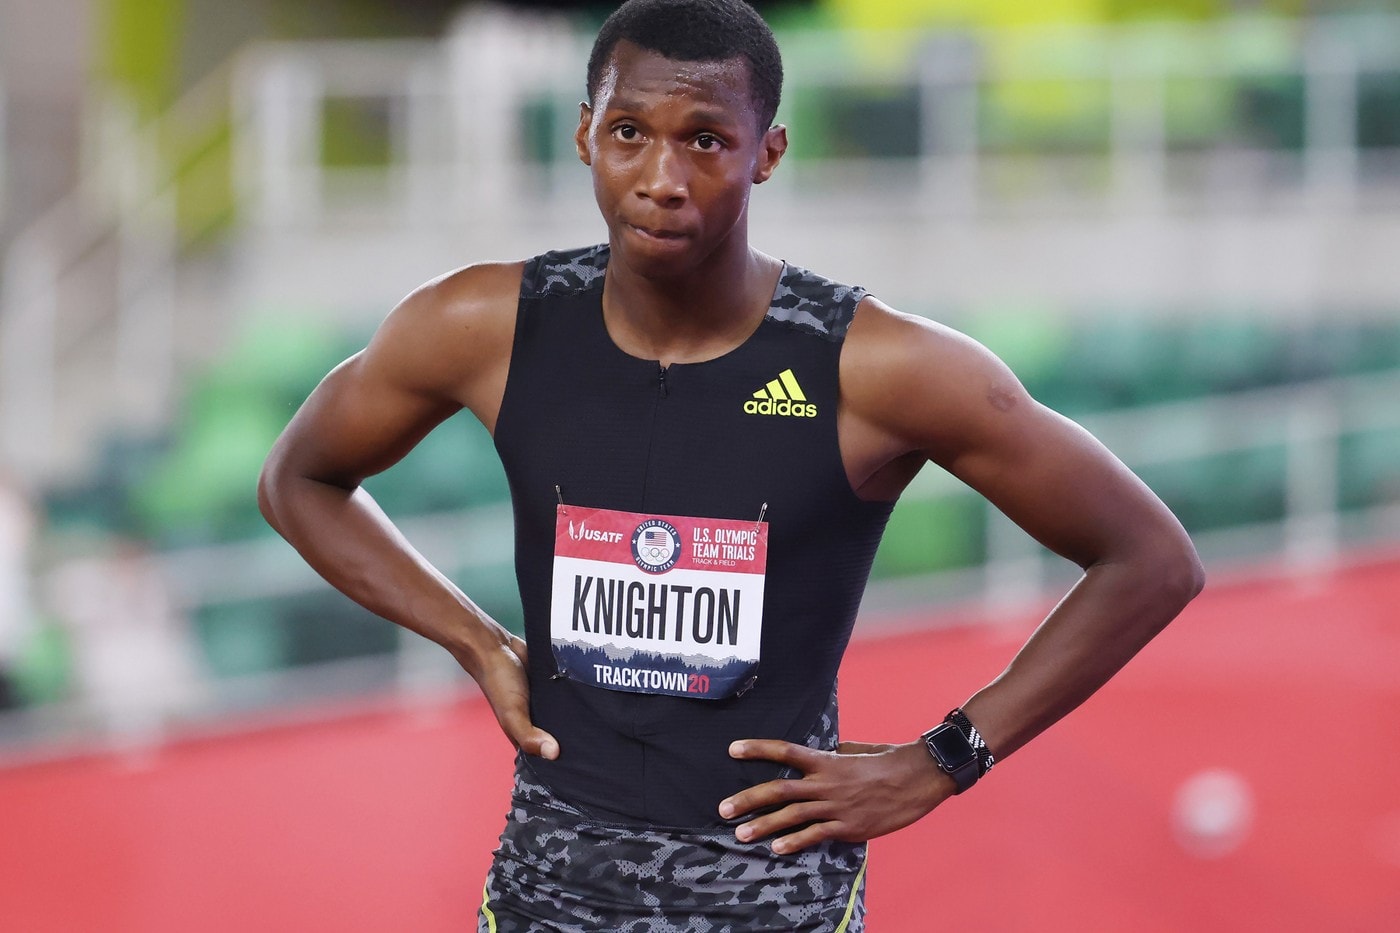 美國 17 歲青年打破「牙買加閃電」Usain Bolt 短跑紀錄成功獲選奧運代表隊